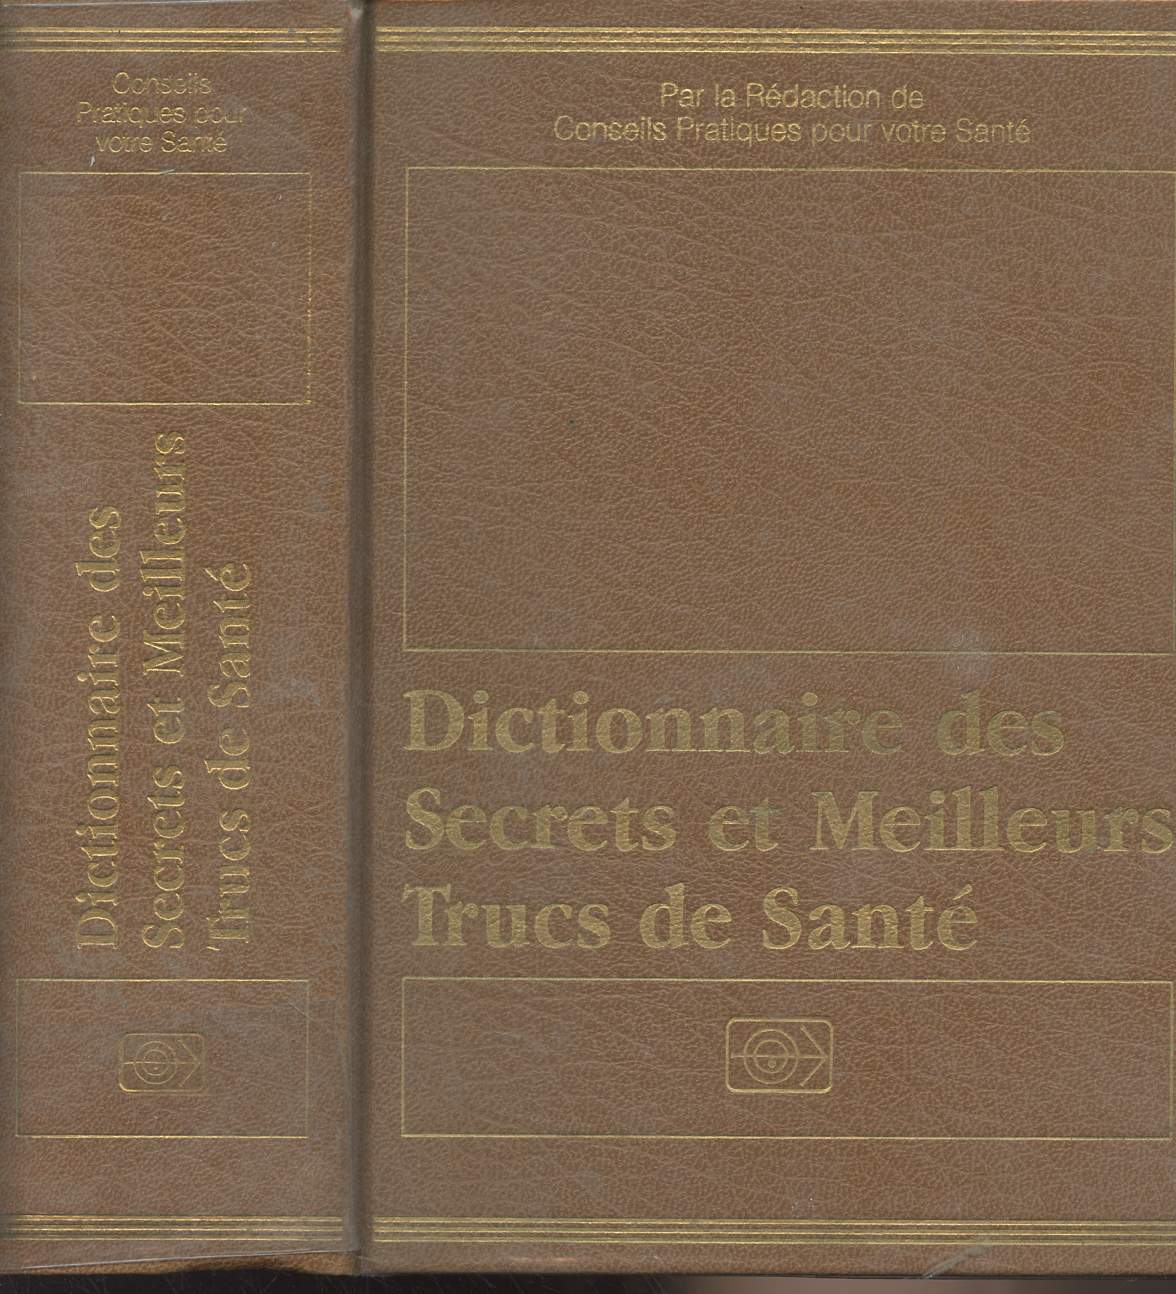 Dictionnaire des secrets et meilleurs trucs de sant